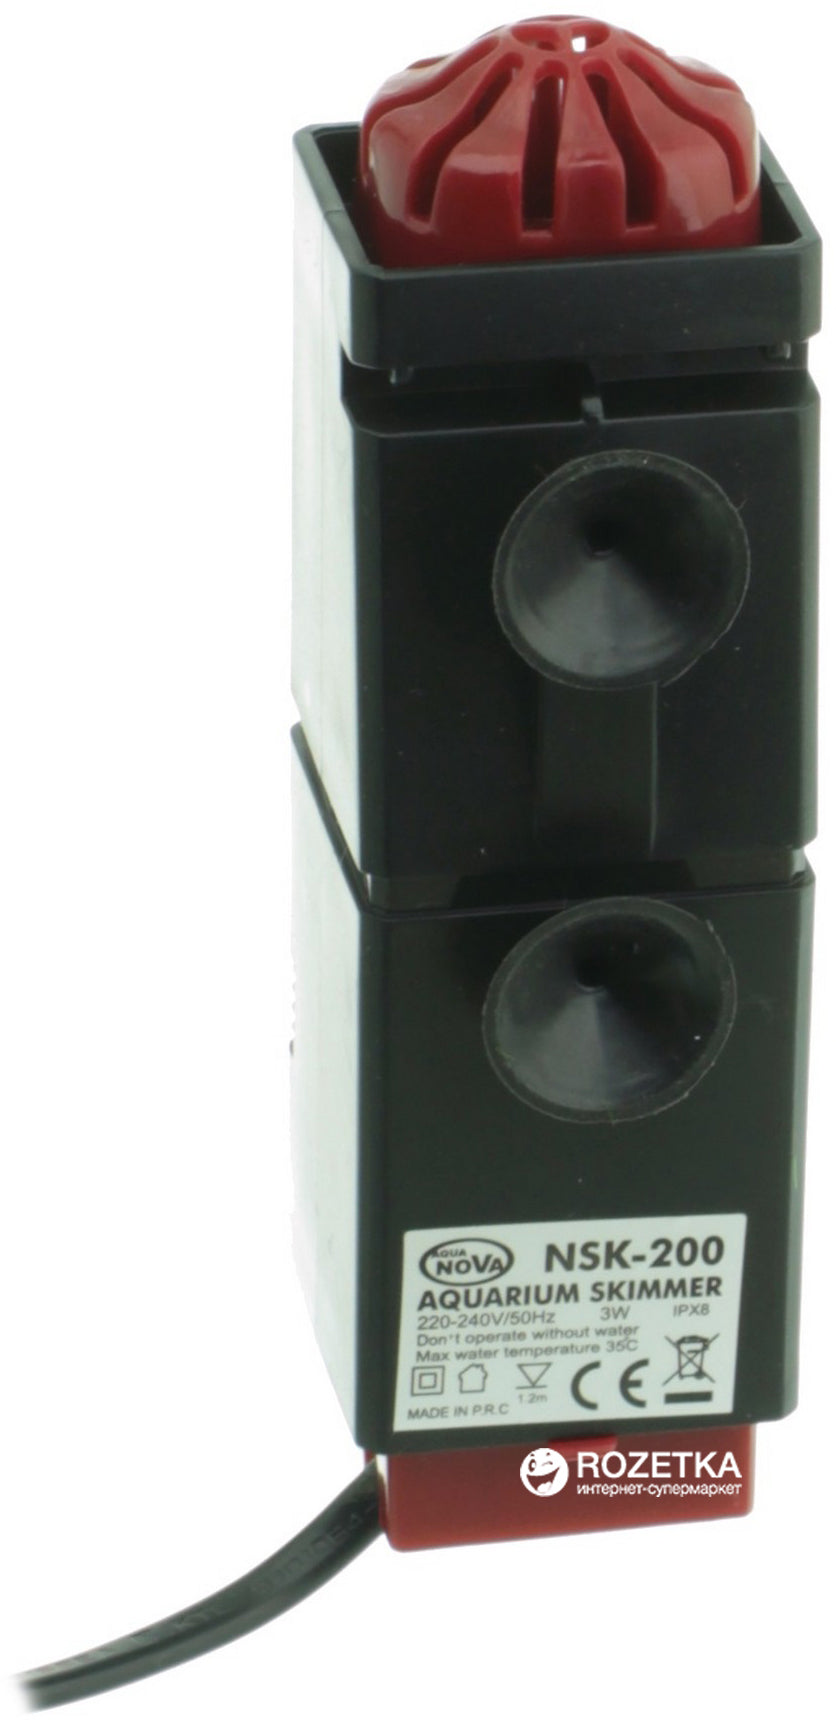 Skimmer-Aqua Nova NSK-200